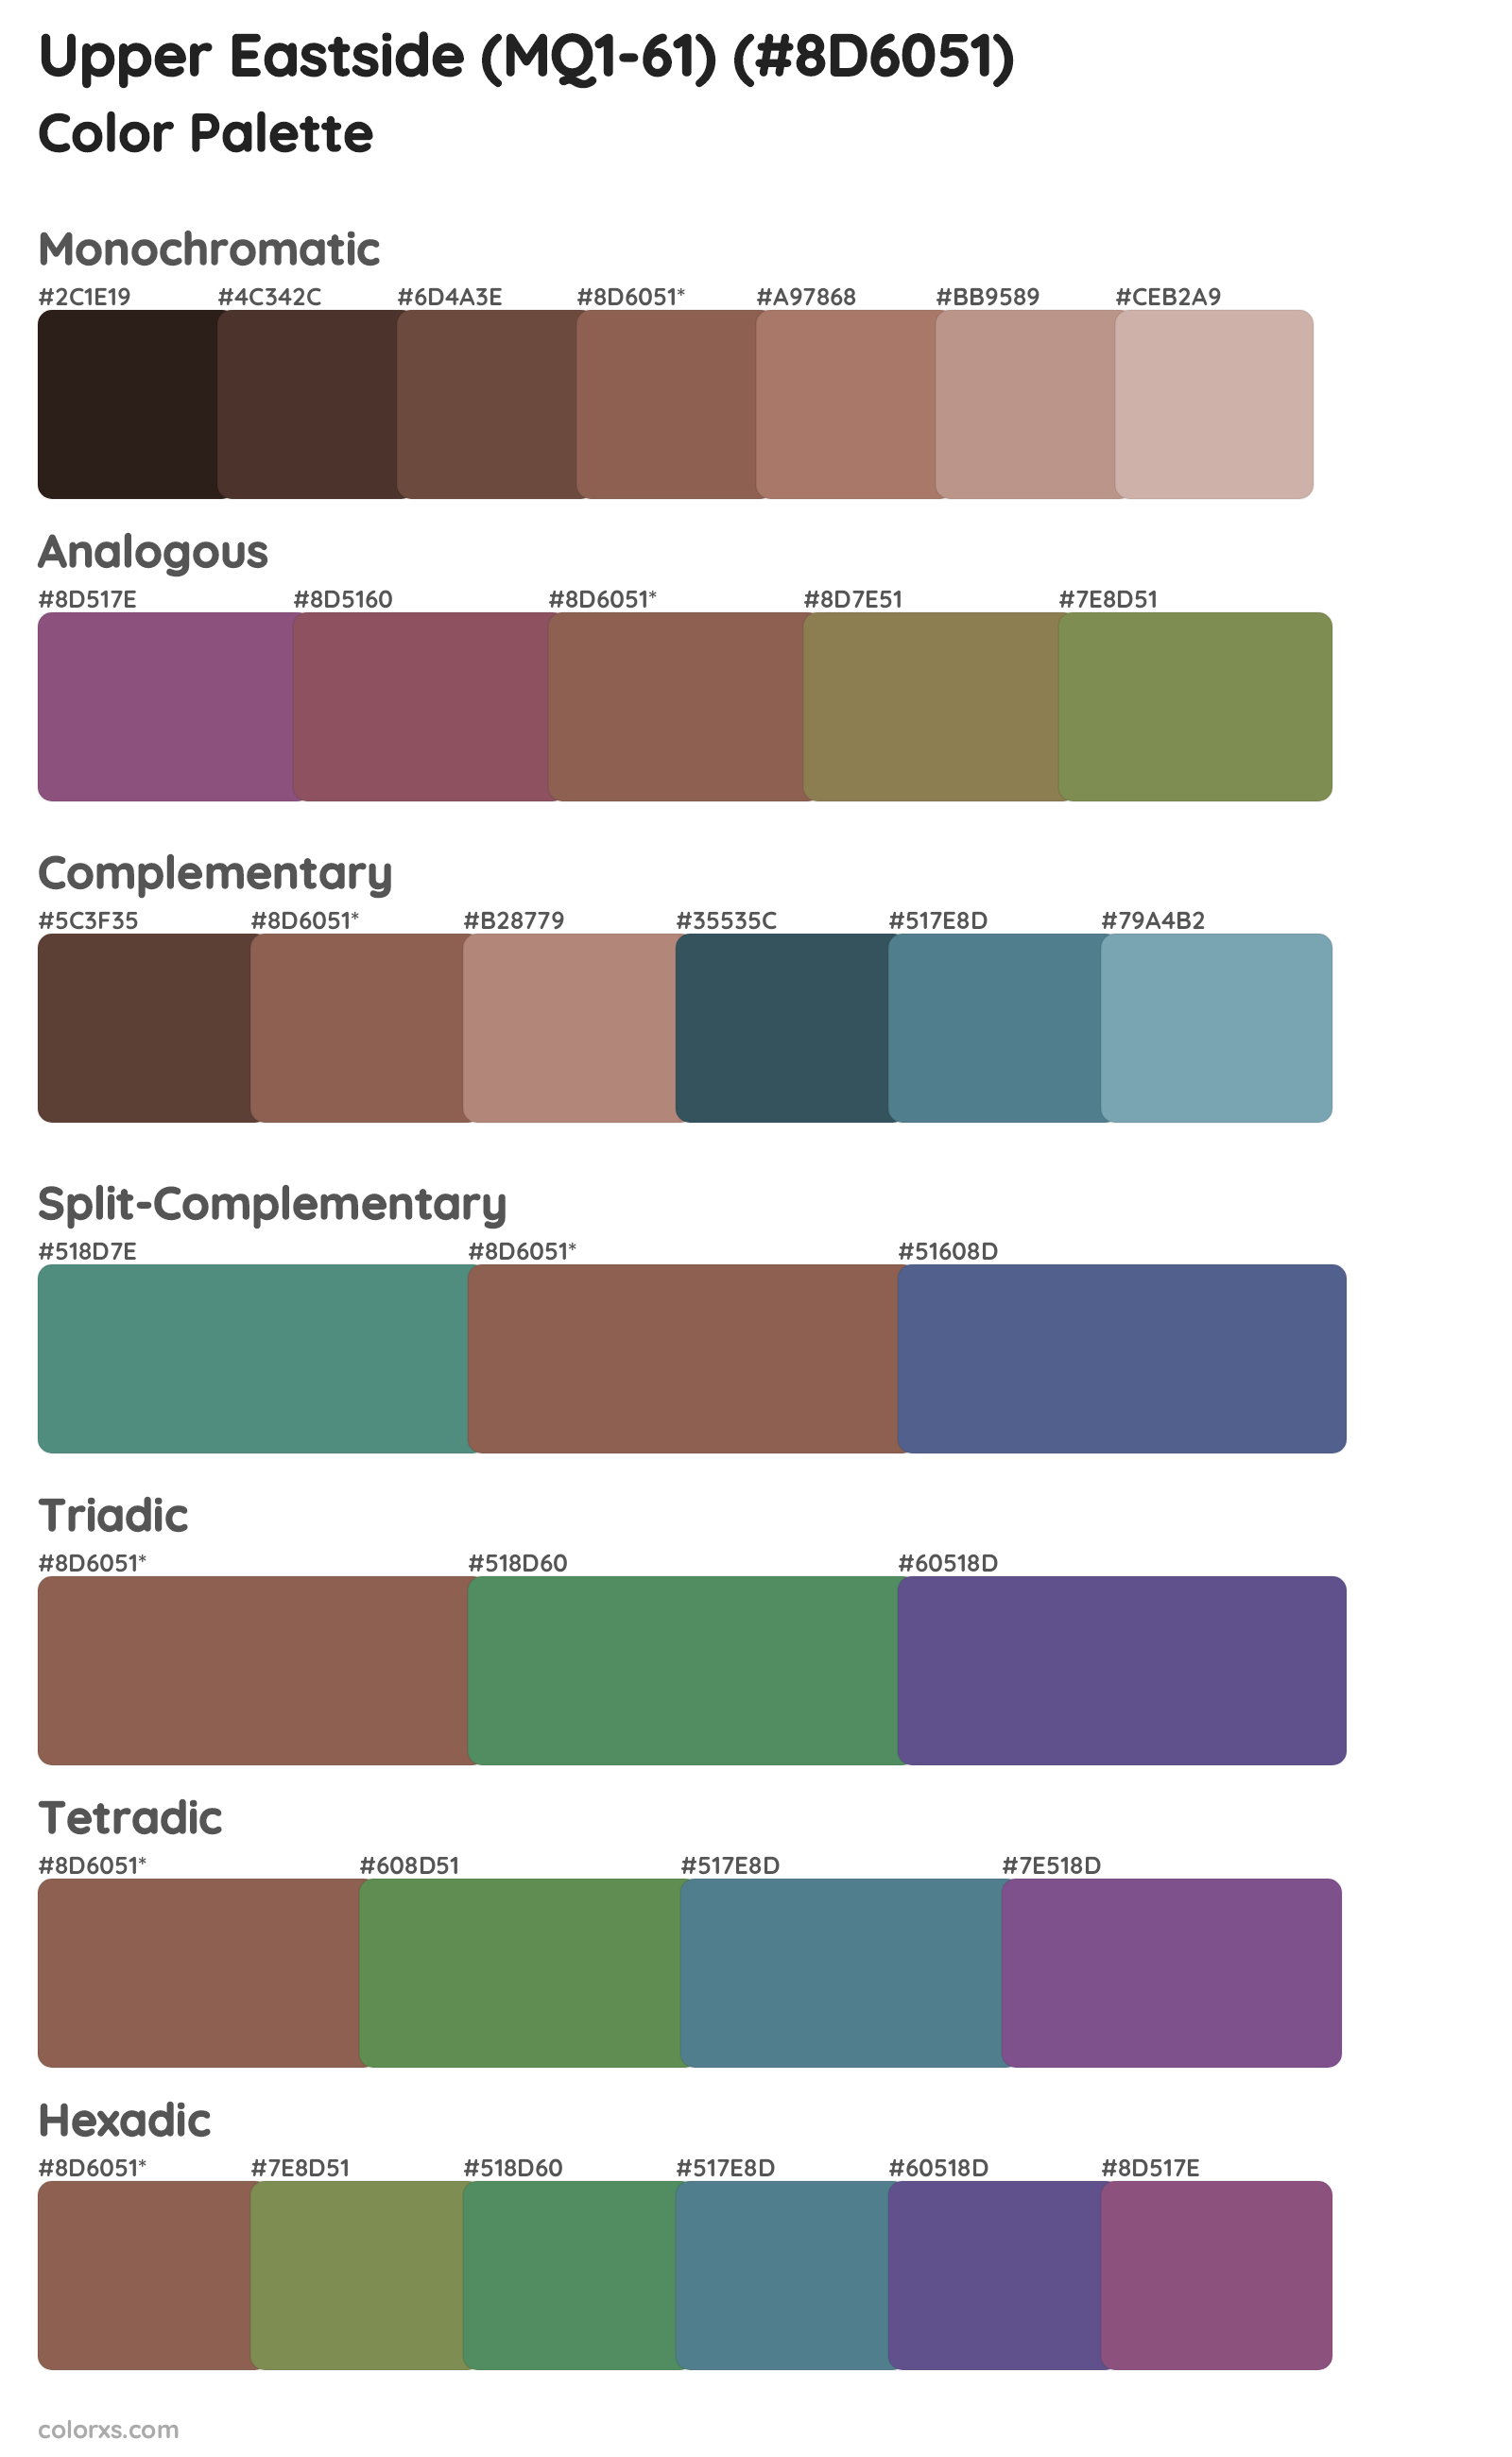 Upper Eastside (MQ1-61) Color Scheme Palettes